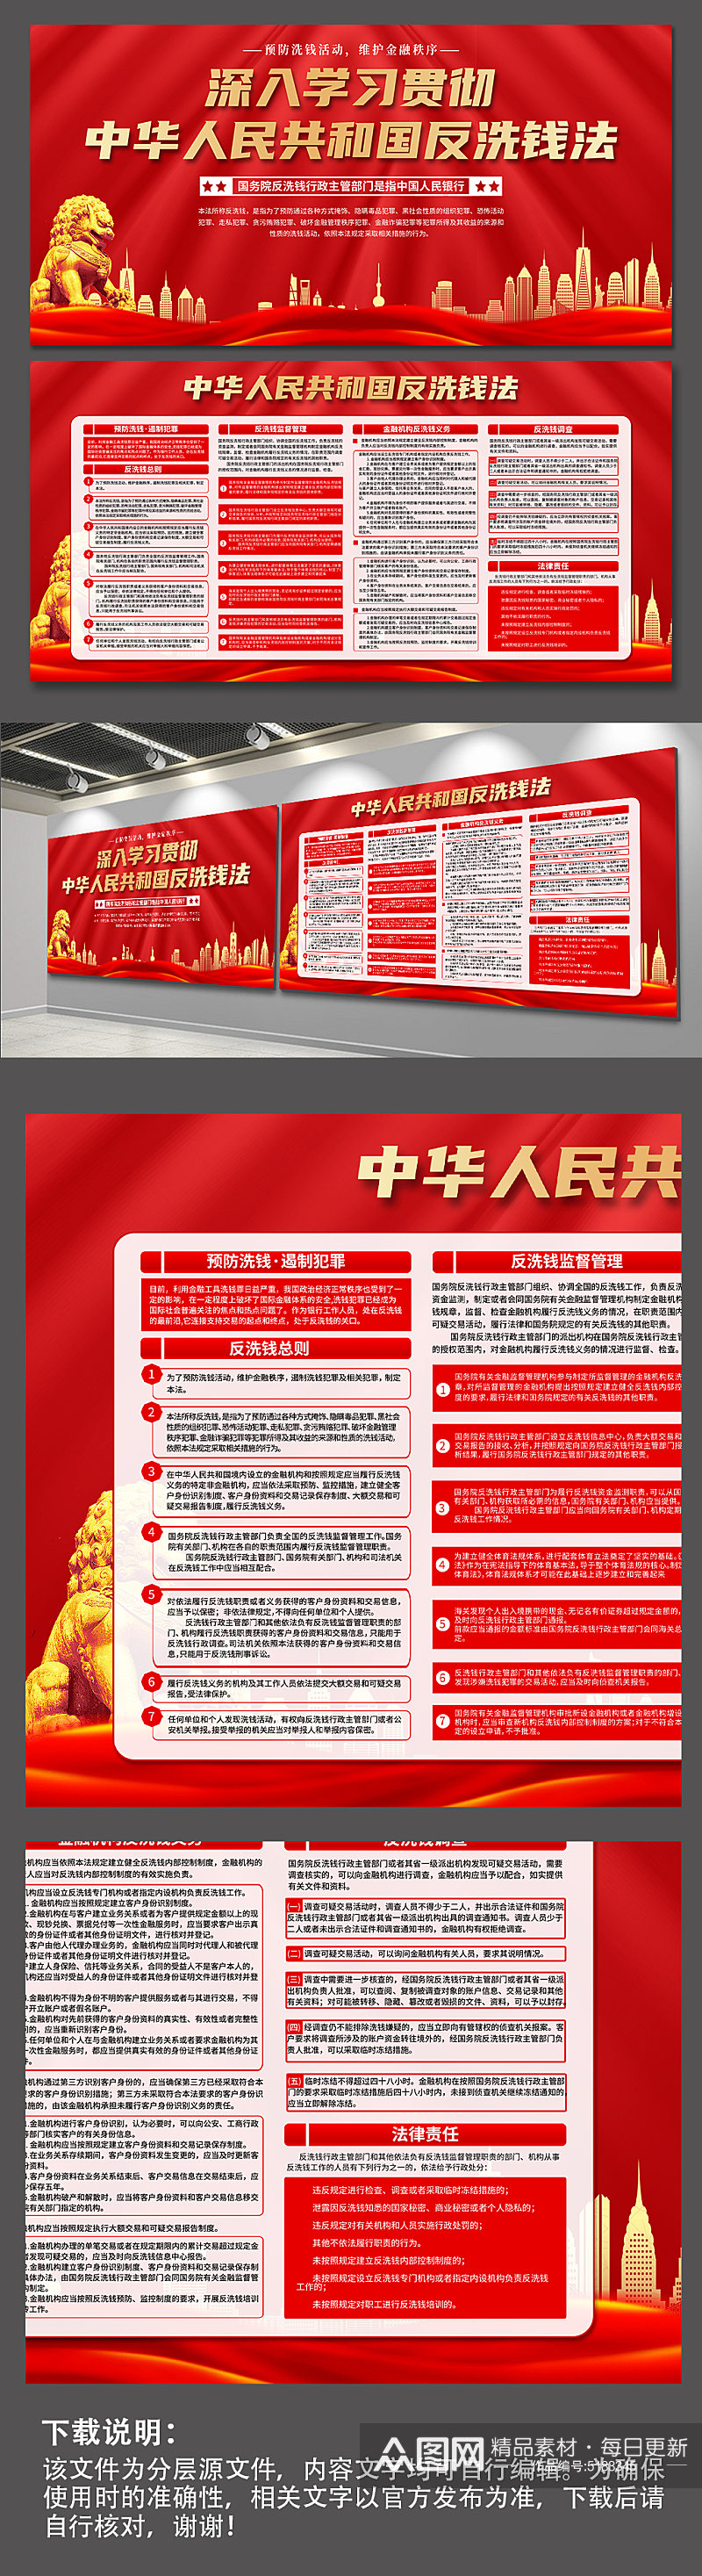 红色中华人民共和国反洗钱法党建展板素材